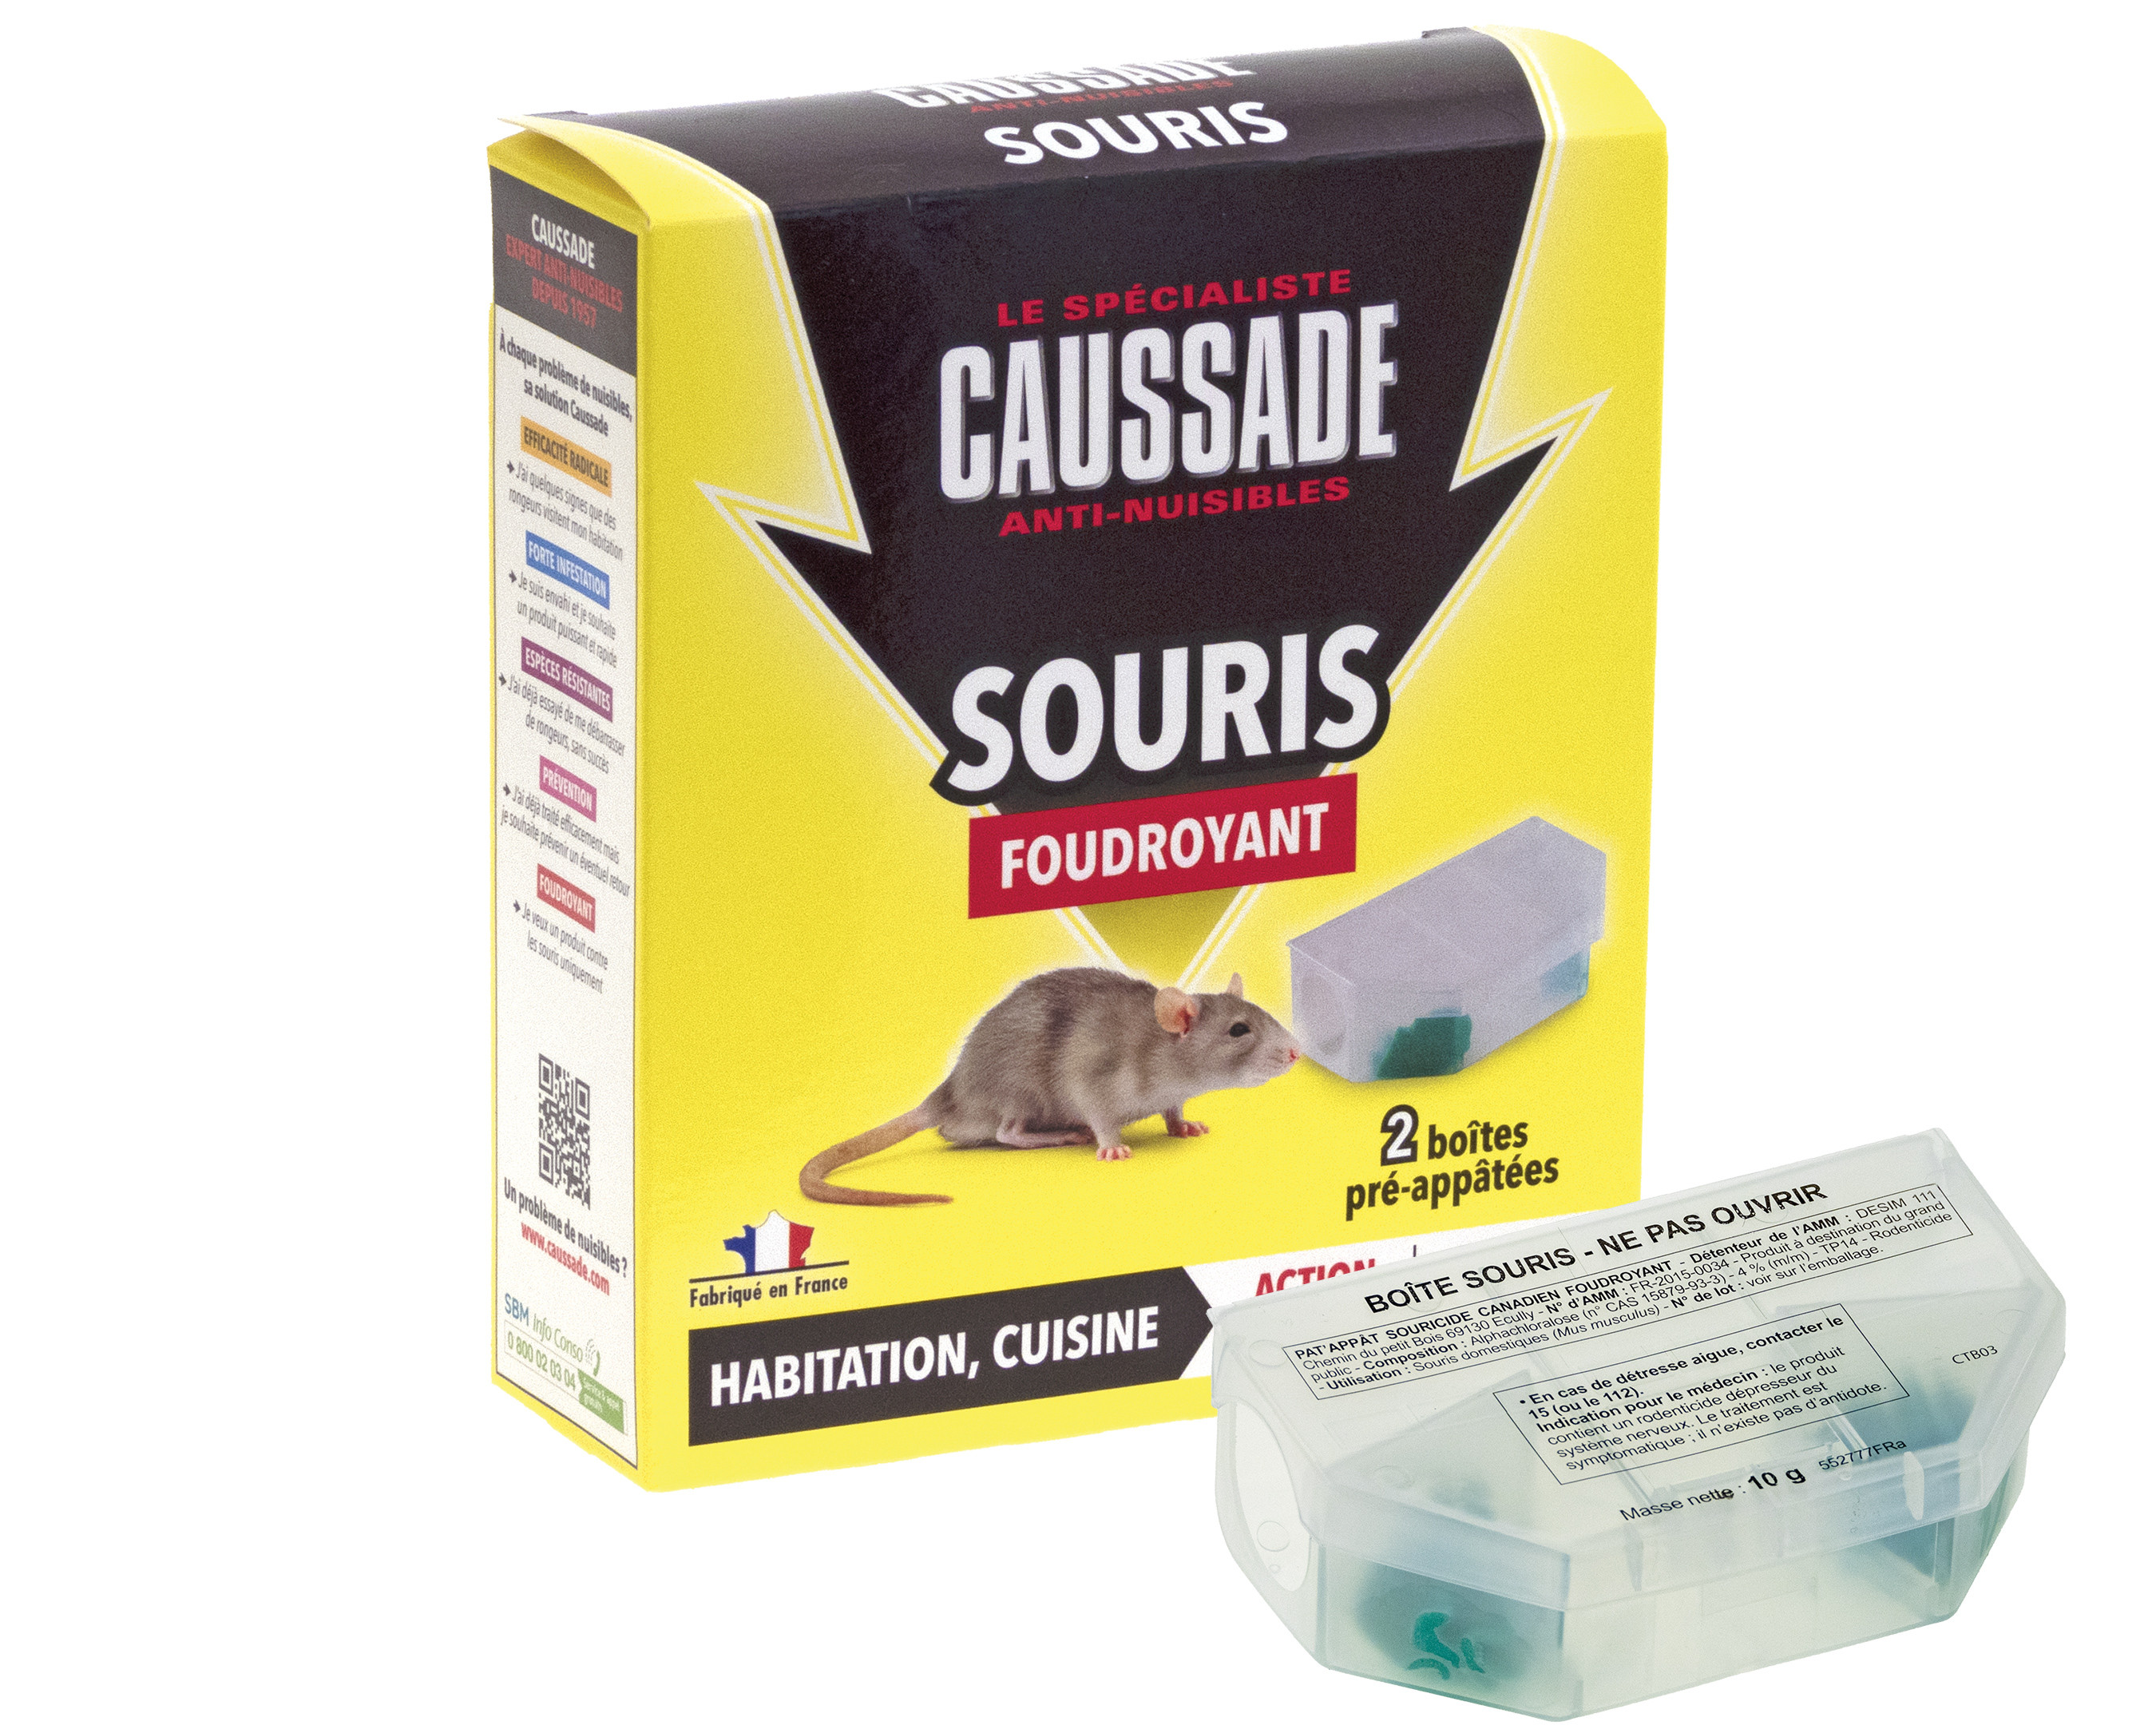 Souricide Caussade Souris foudroyant • 2 boîtes pré-appâtées